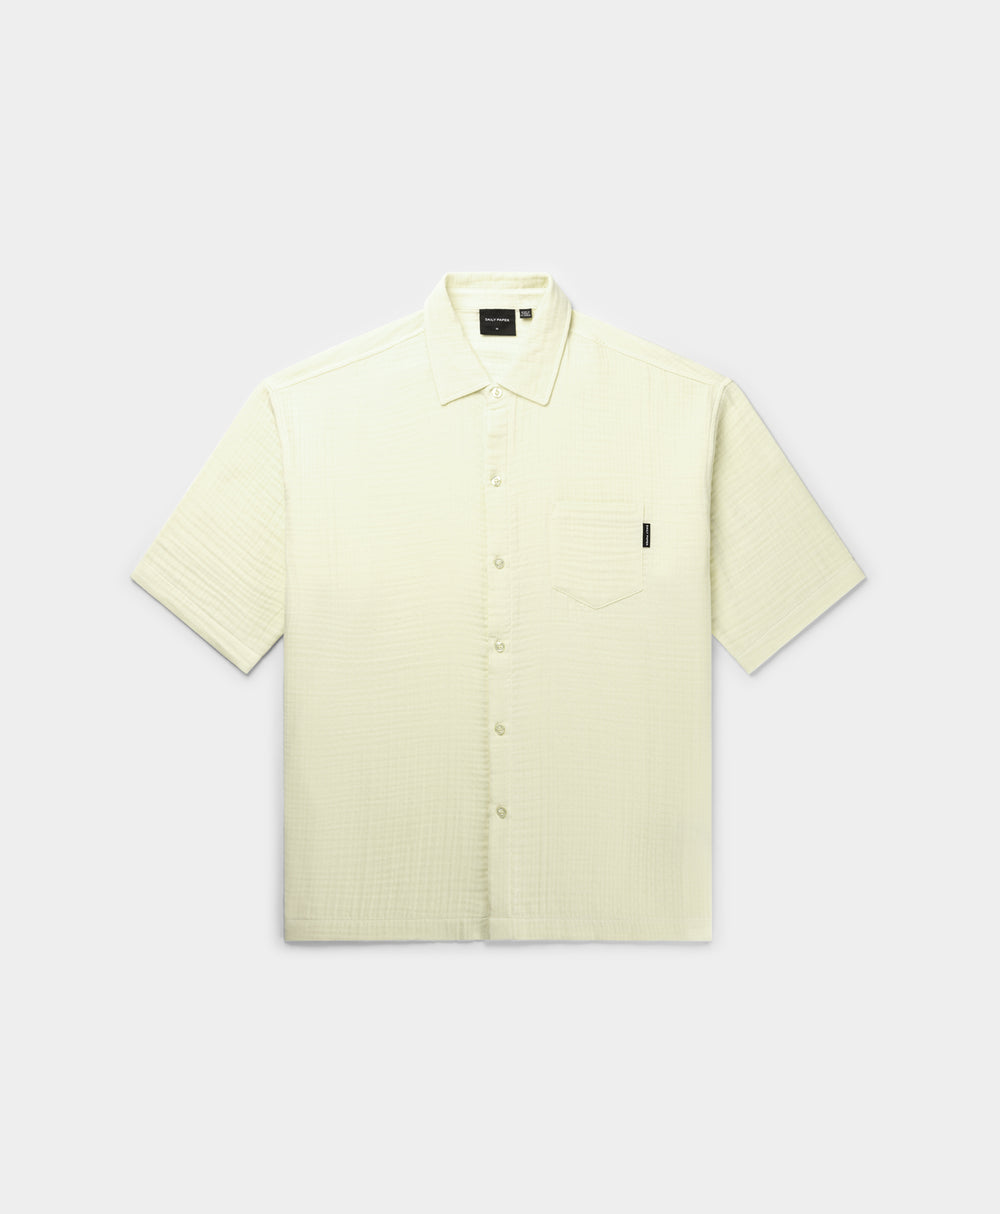 DP - Icing Yellow Enzi Seersucker Shirt - Packshot - Front 